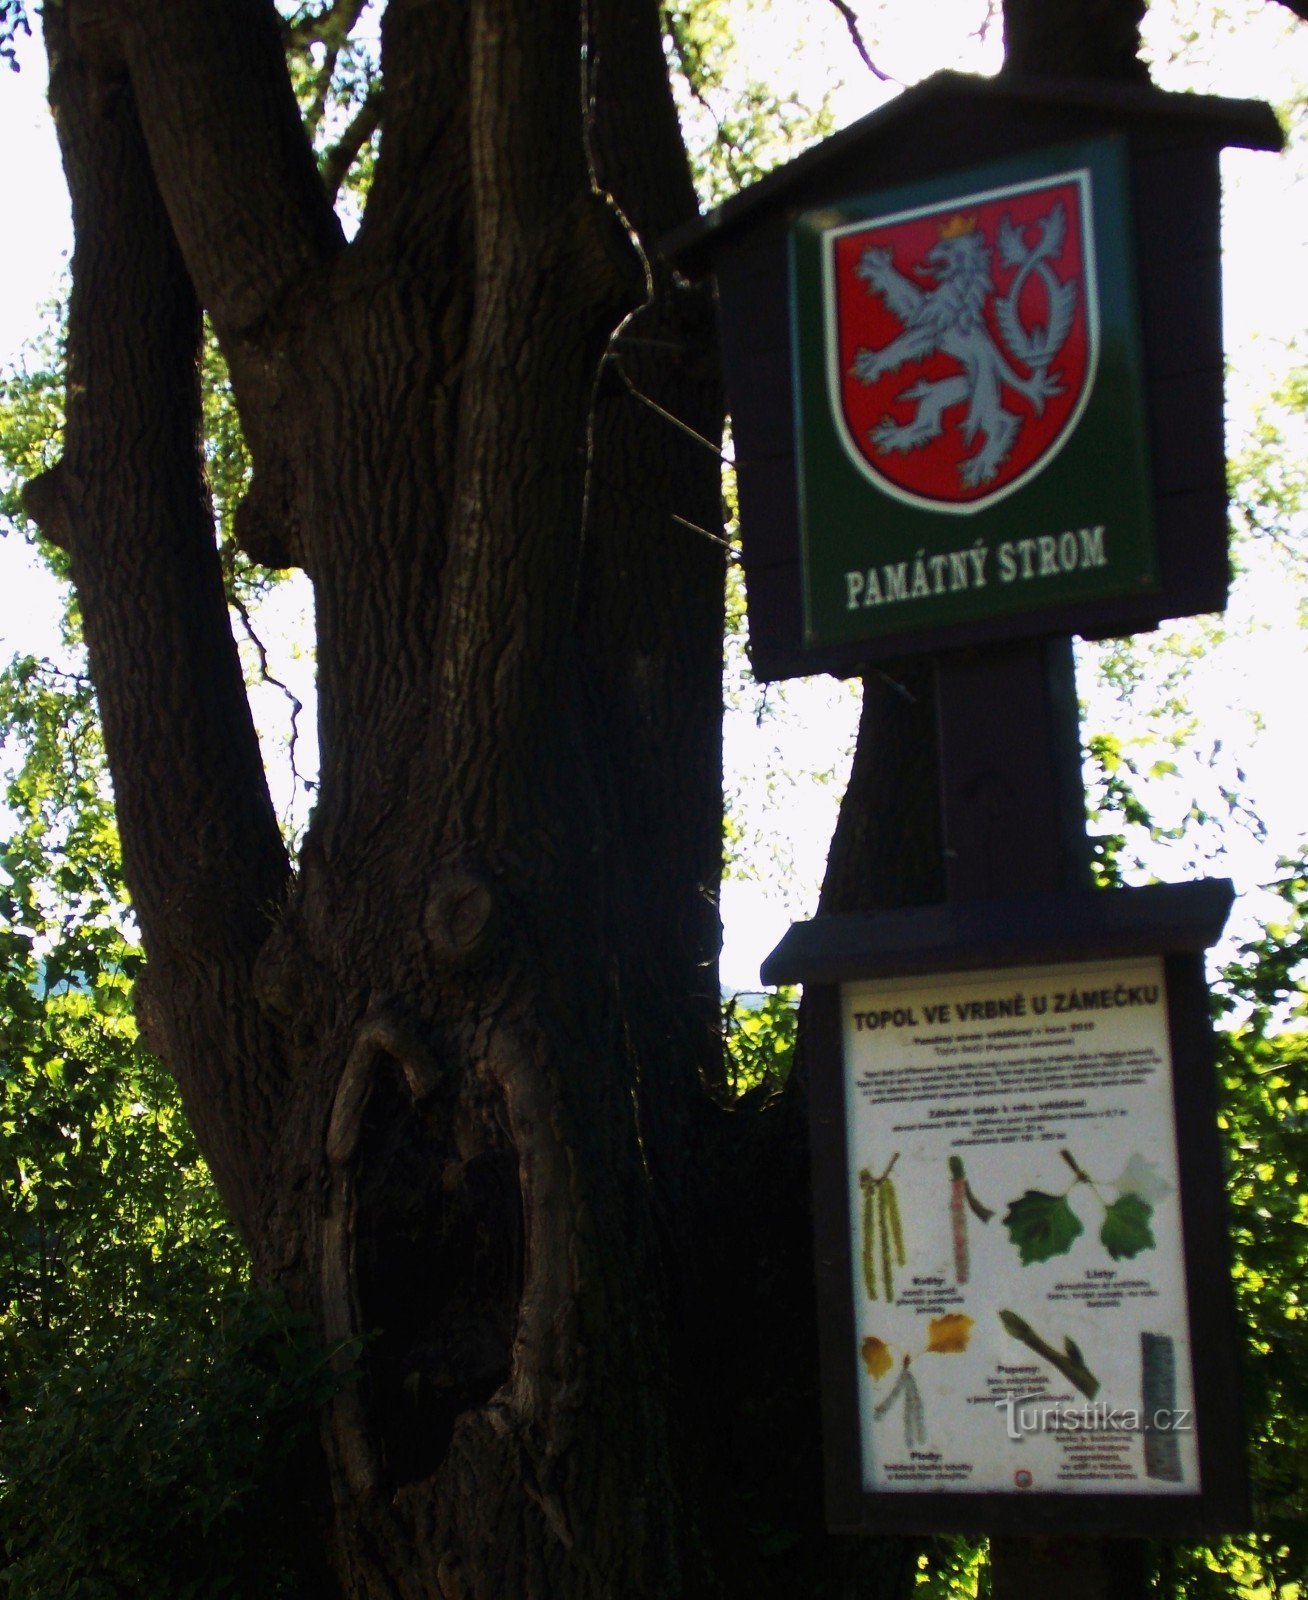 Αναμνηστικό δέντρο - Γκρι λεύκα κοντά στο Κάστρο στο Vrbno pod Pradědem